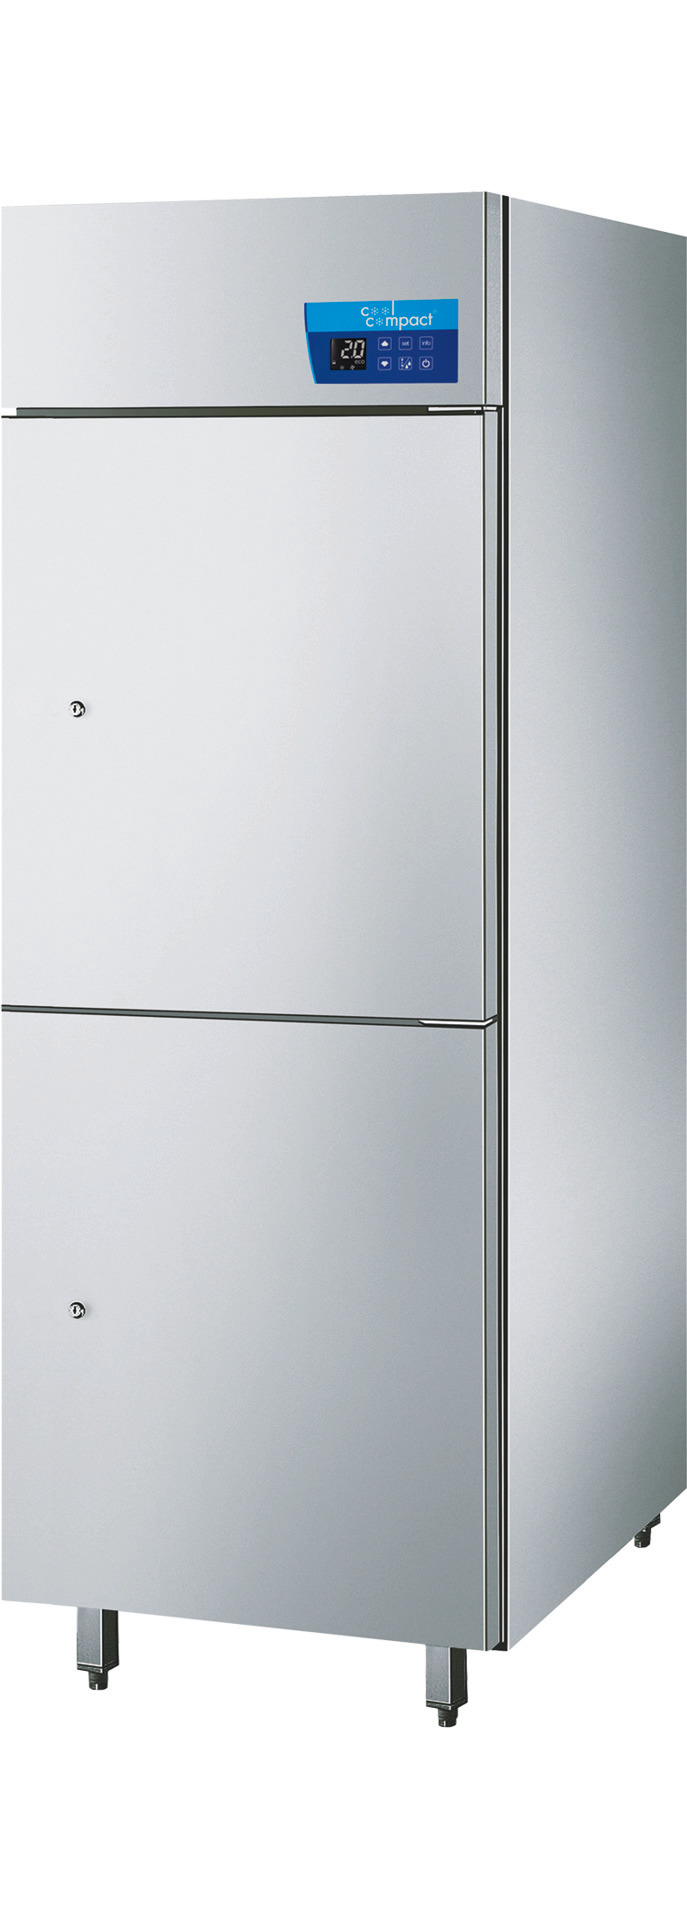 Umluft-Tiefkühlschrank mit 2 Türen  20 x GN 2/1 / zentralgekühlt